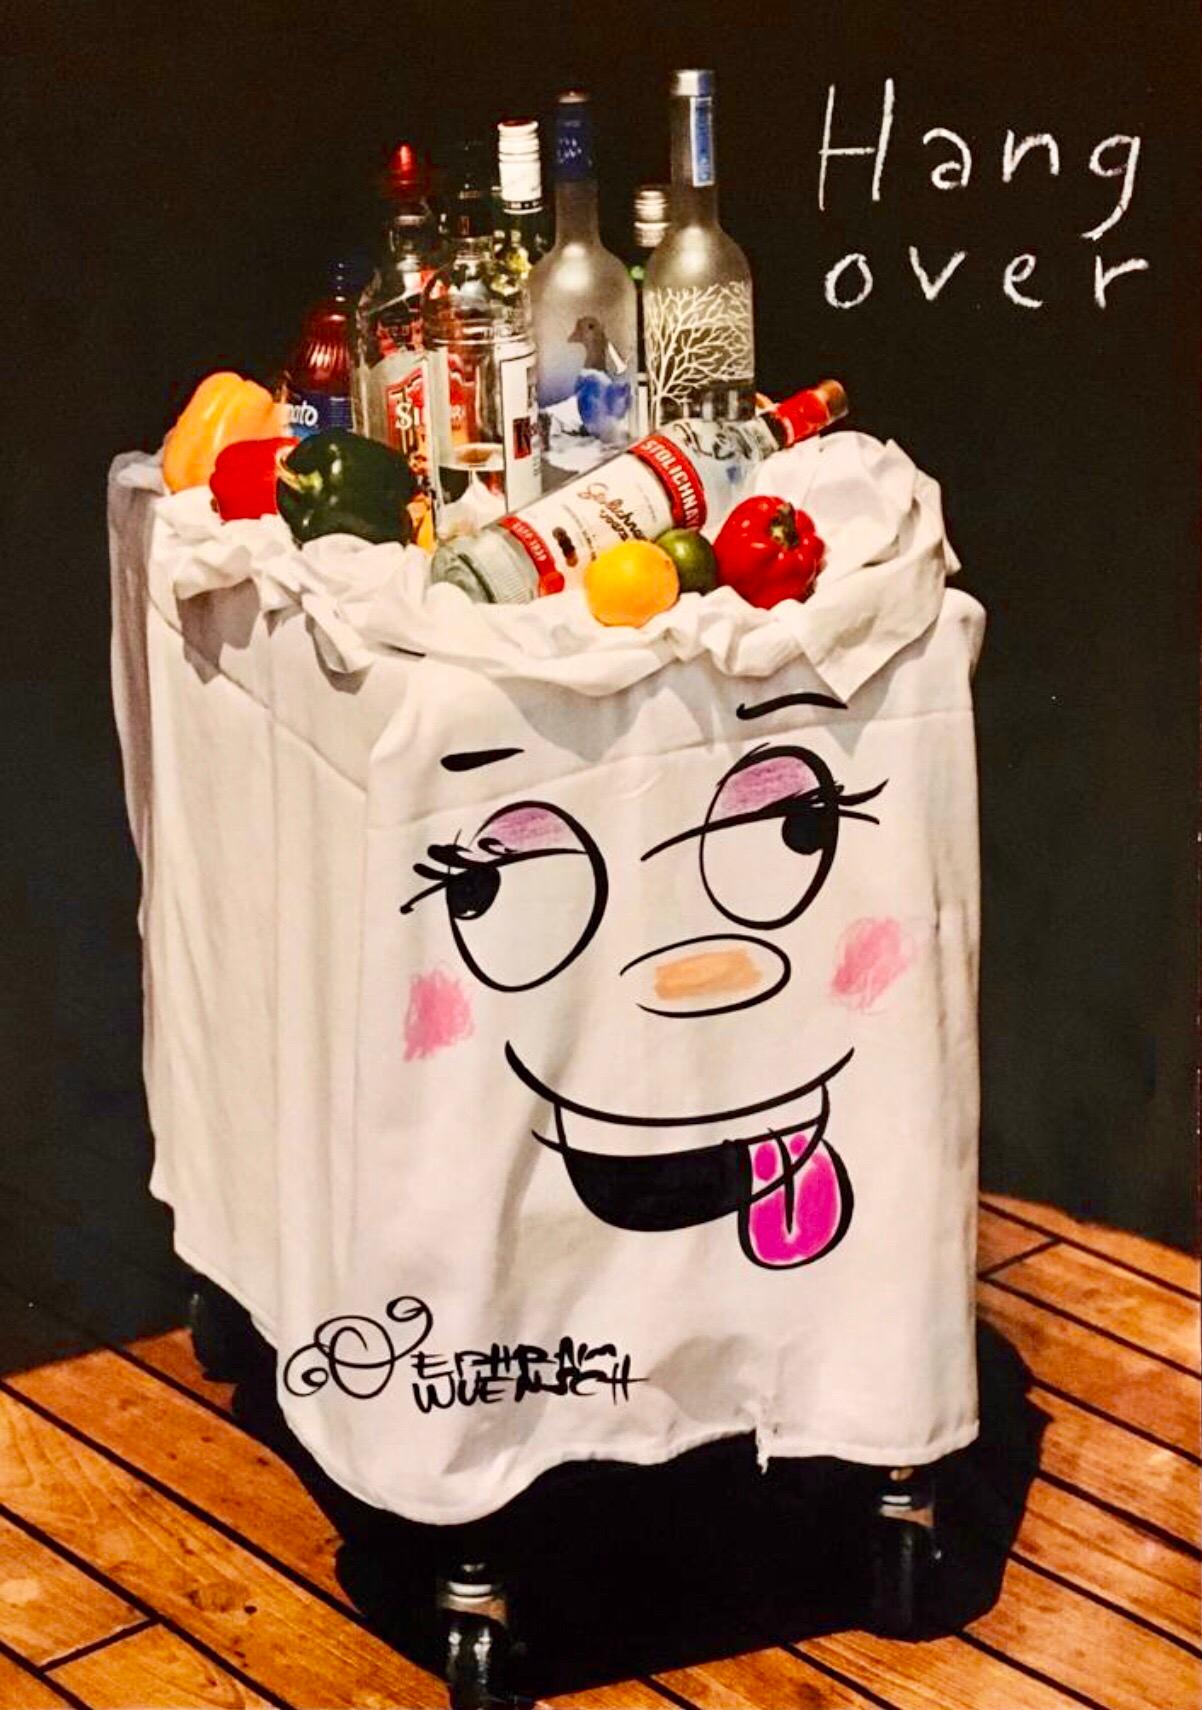 Ephraim Wuensch Figurative Art - Mixed Media "Hangover" Vodka Bar Cart Pop Art Drawing NYC Street Art